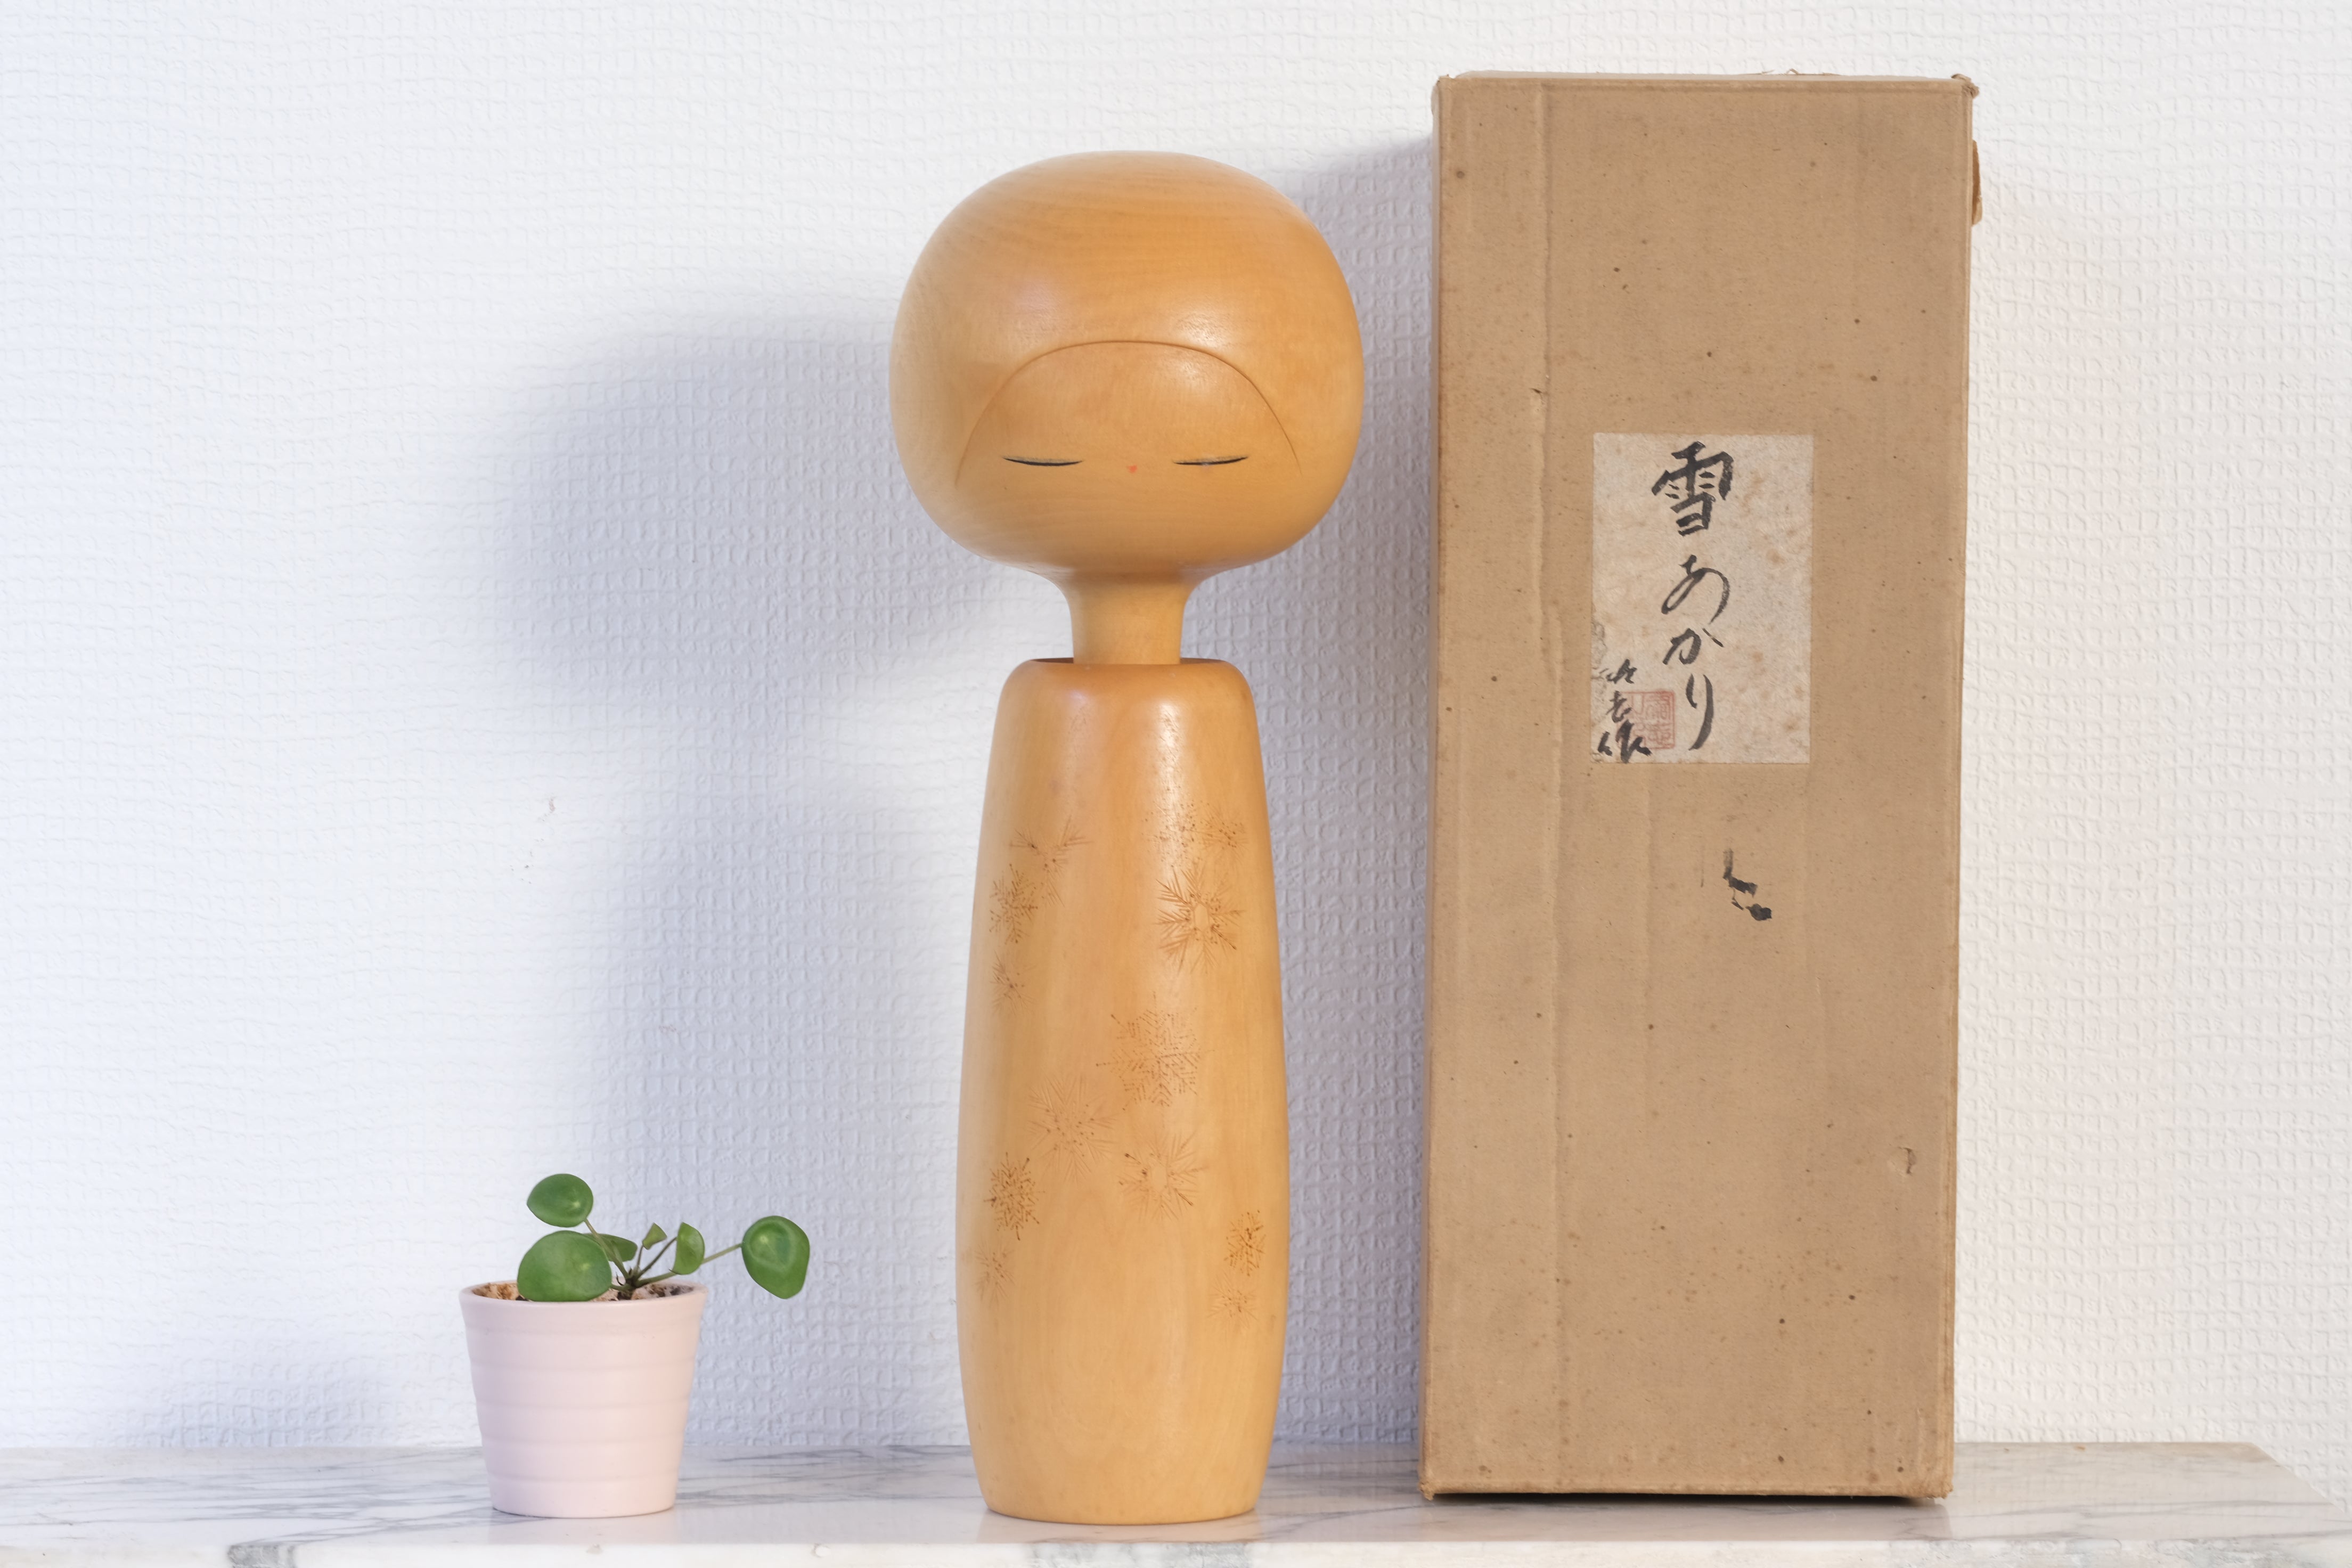 Exclusive Vintage Sosaku Kokeshi by Yuji Kawase (1938-) | With Original Box | 36 cm